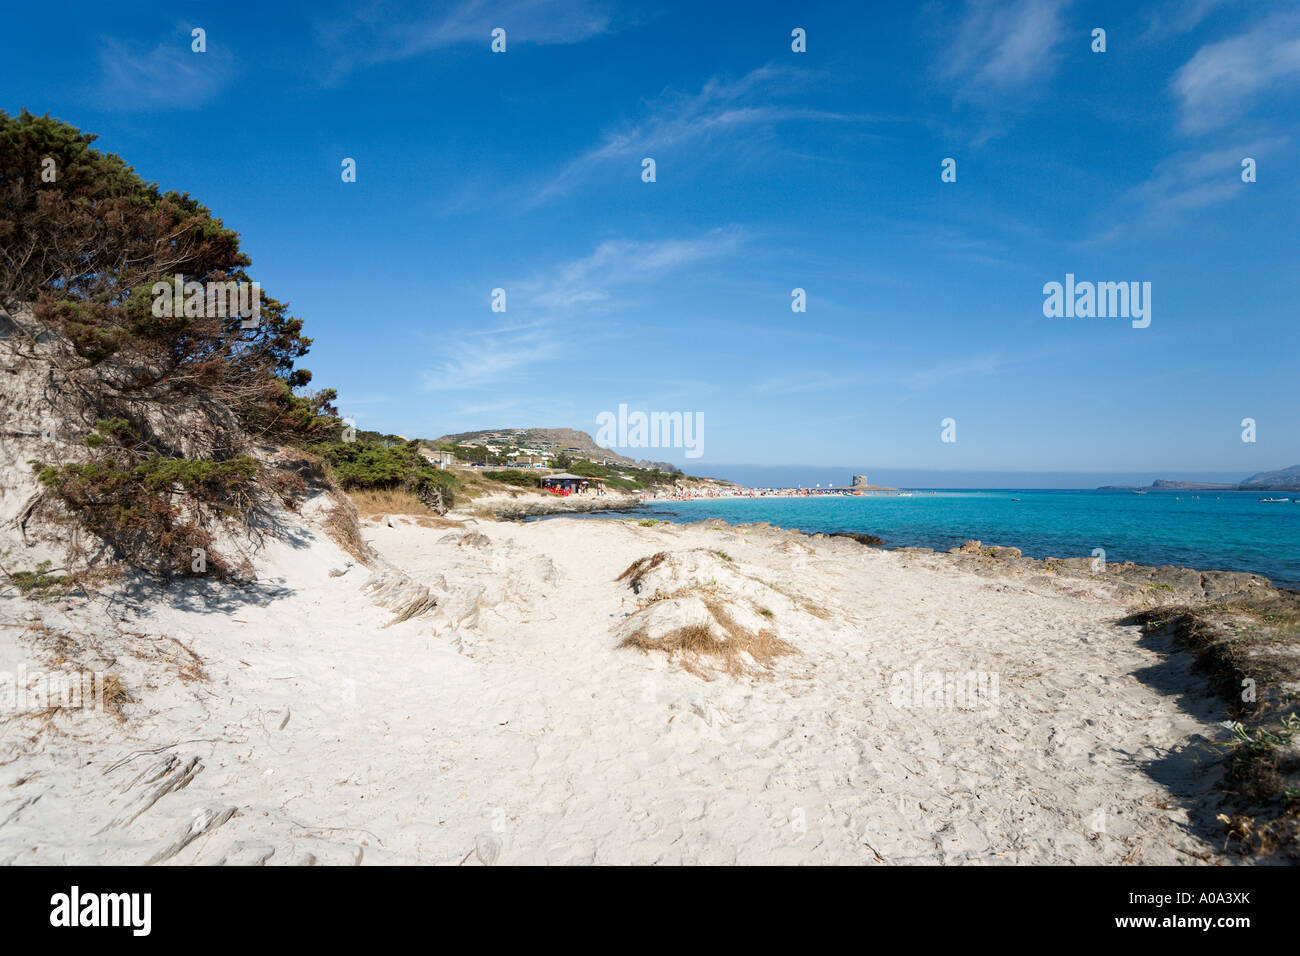 La Pelosa Beach, Stintino, Capo del Falcone, Sardinia, Italy Stock Photo